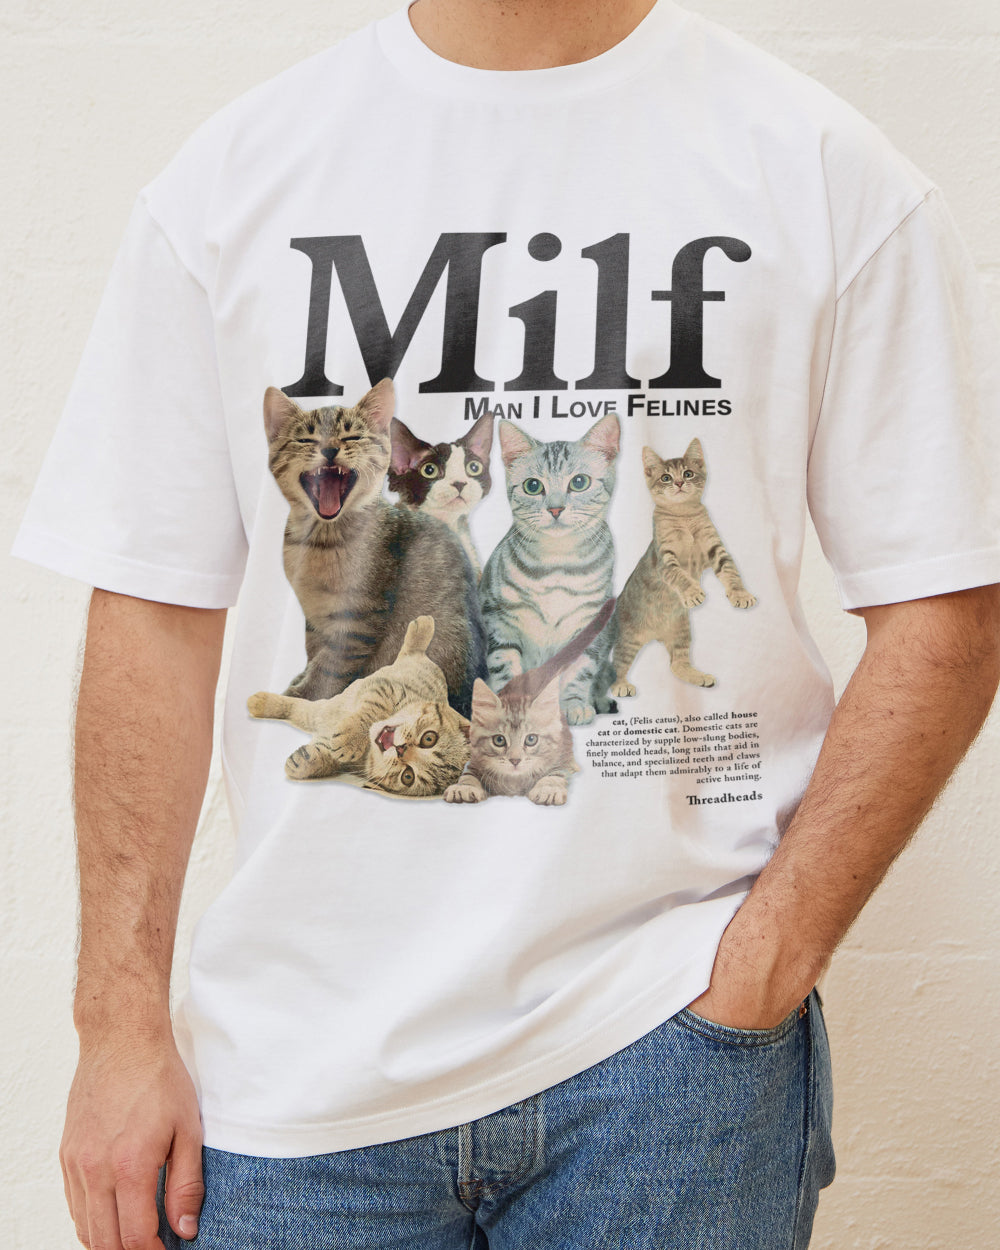 Man I Love Felines Bundle | T-Shirt, Mug & Air Freshener Bundle